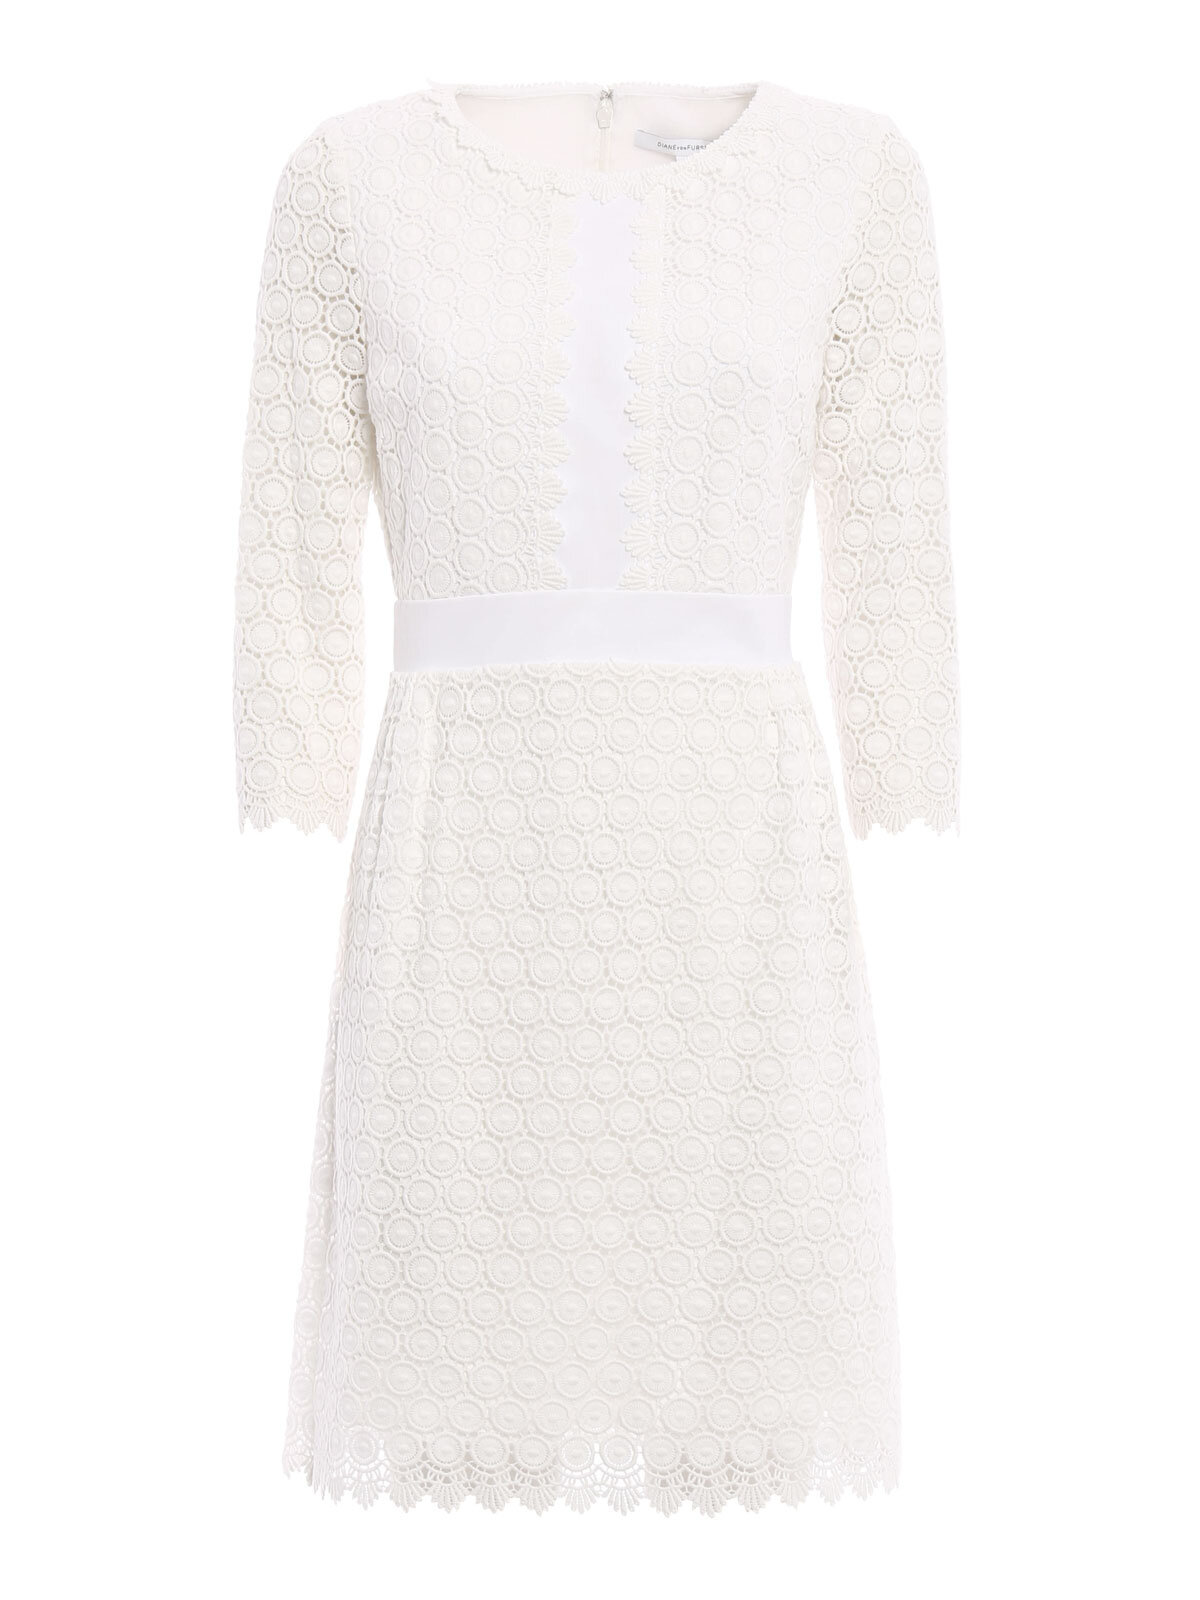 Diane von Furstenberg Nolly Dress in White.jpg